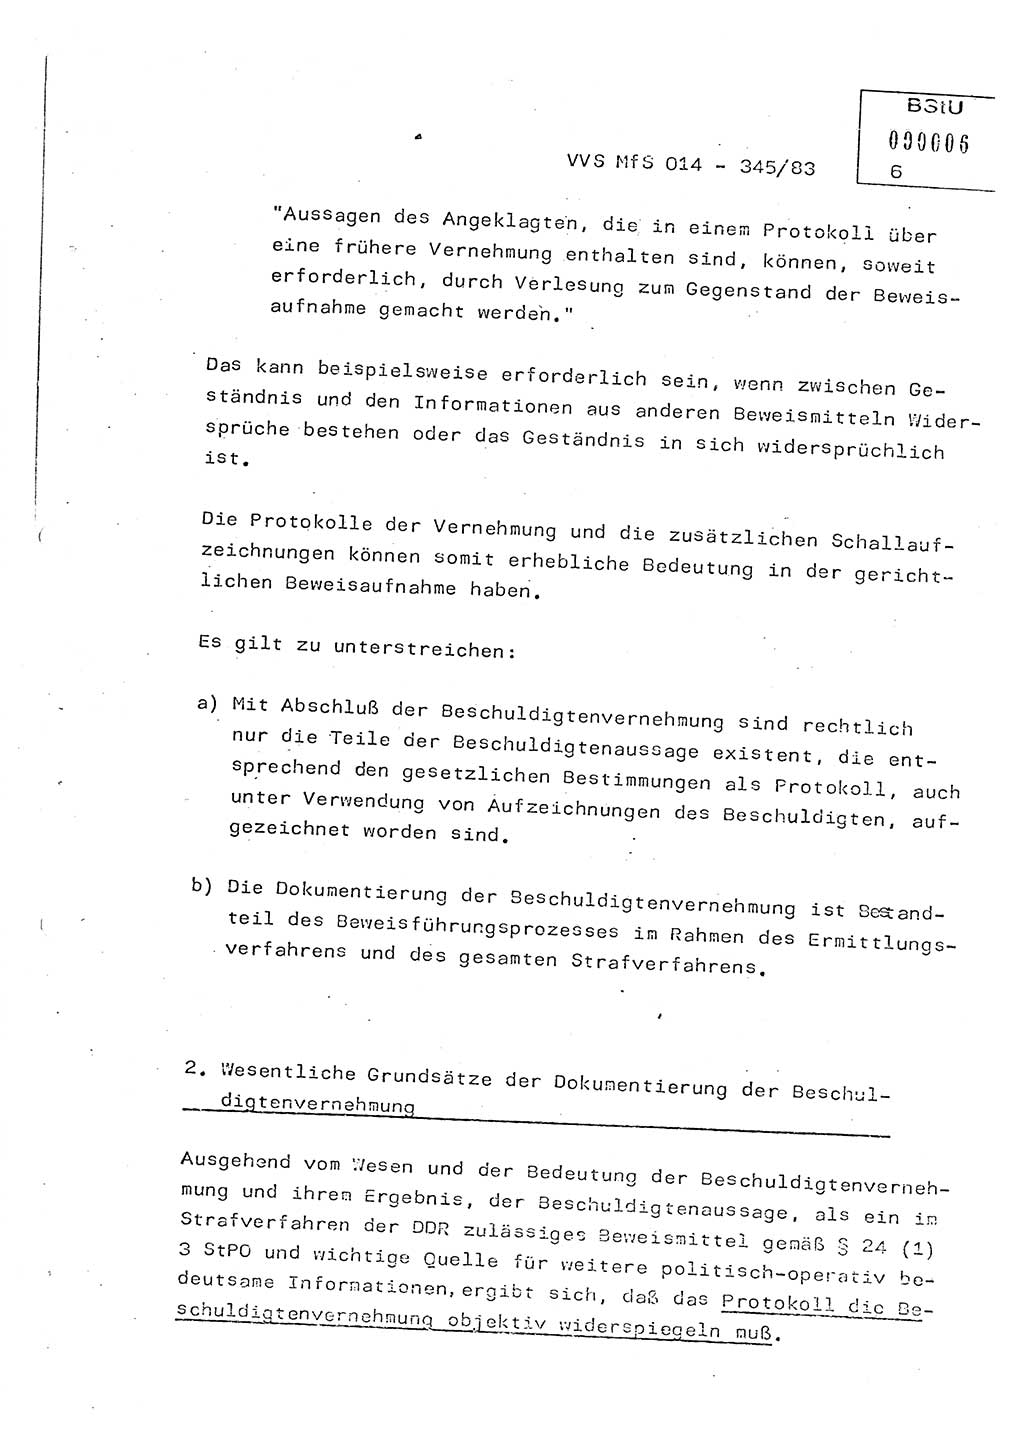 Lektion Ministerium für Staatssicherheit (MfS) [Deutsche Demokratische Republik (DDR)], Hauptabteilung (HA) Ⅸ, Vertrauliche Verschlußsache (VVS) o014-345/83, Berlin 1983, Seite 6 (Lekt. MfS DDR HA Ⅸ VVS o014-345/83 1983, S. 6)